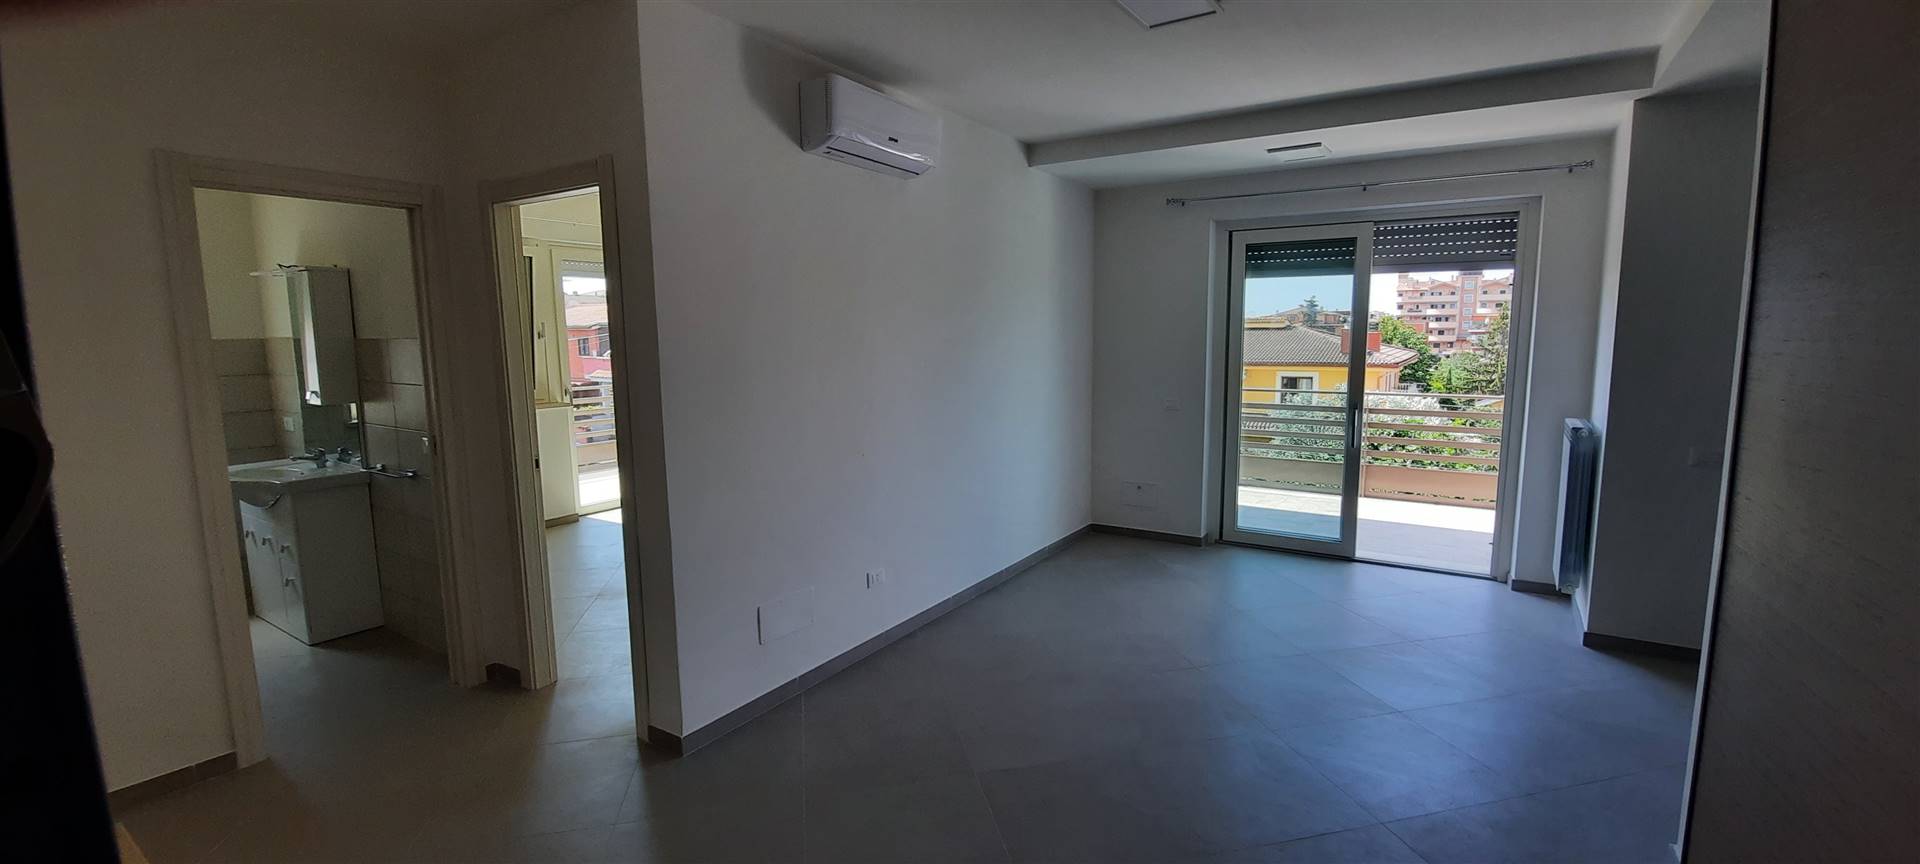 ROMA, SELVA CANDIDA, a pochi minuti dal GRA in zona tranquilla, affittiamo un Appartamento di Nuova costruzione di circa 65 mq su due livelli, sito al 2° piano su 3 di una palazzina in cortina 